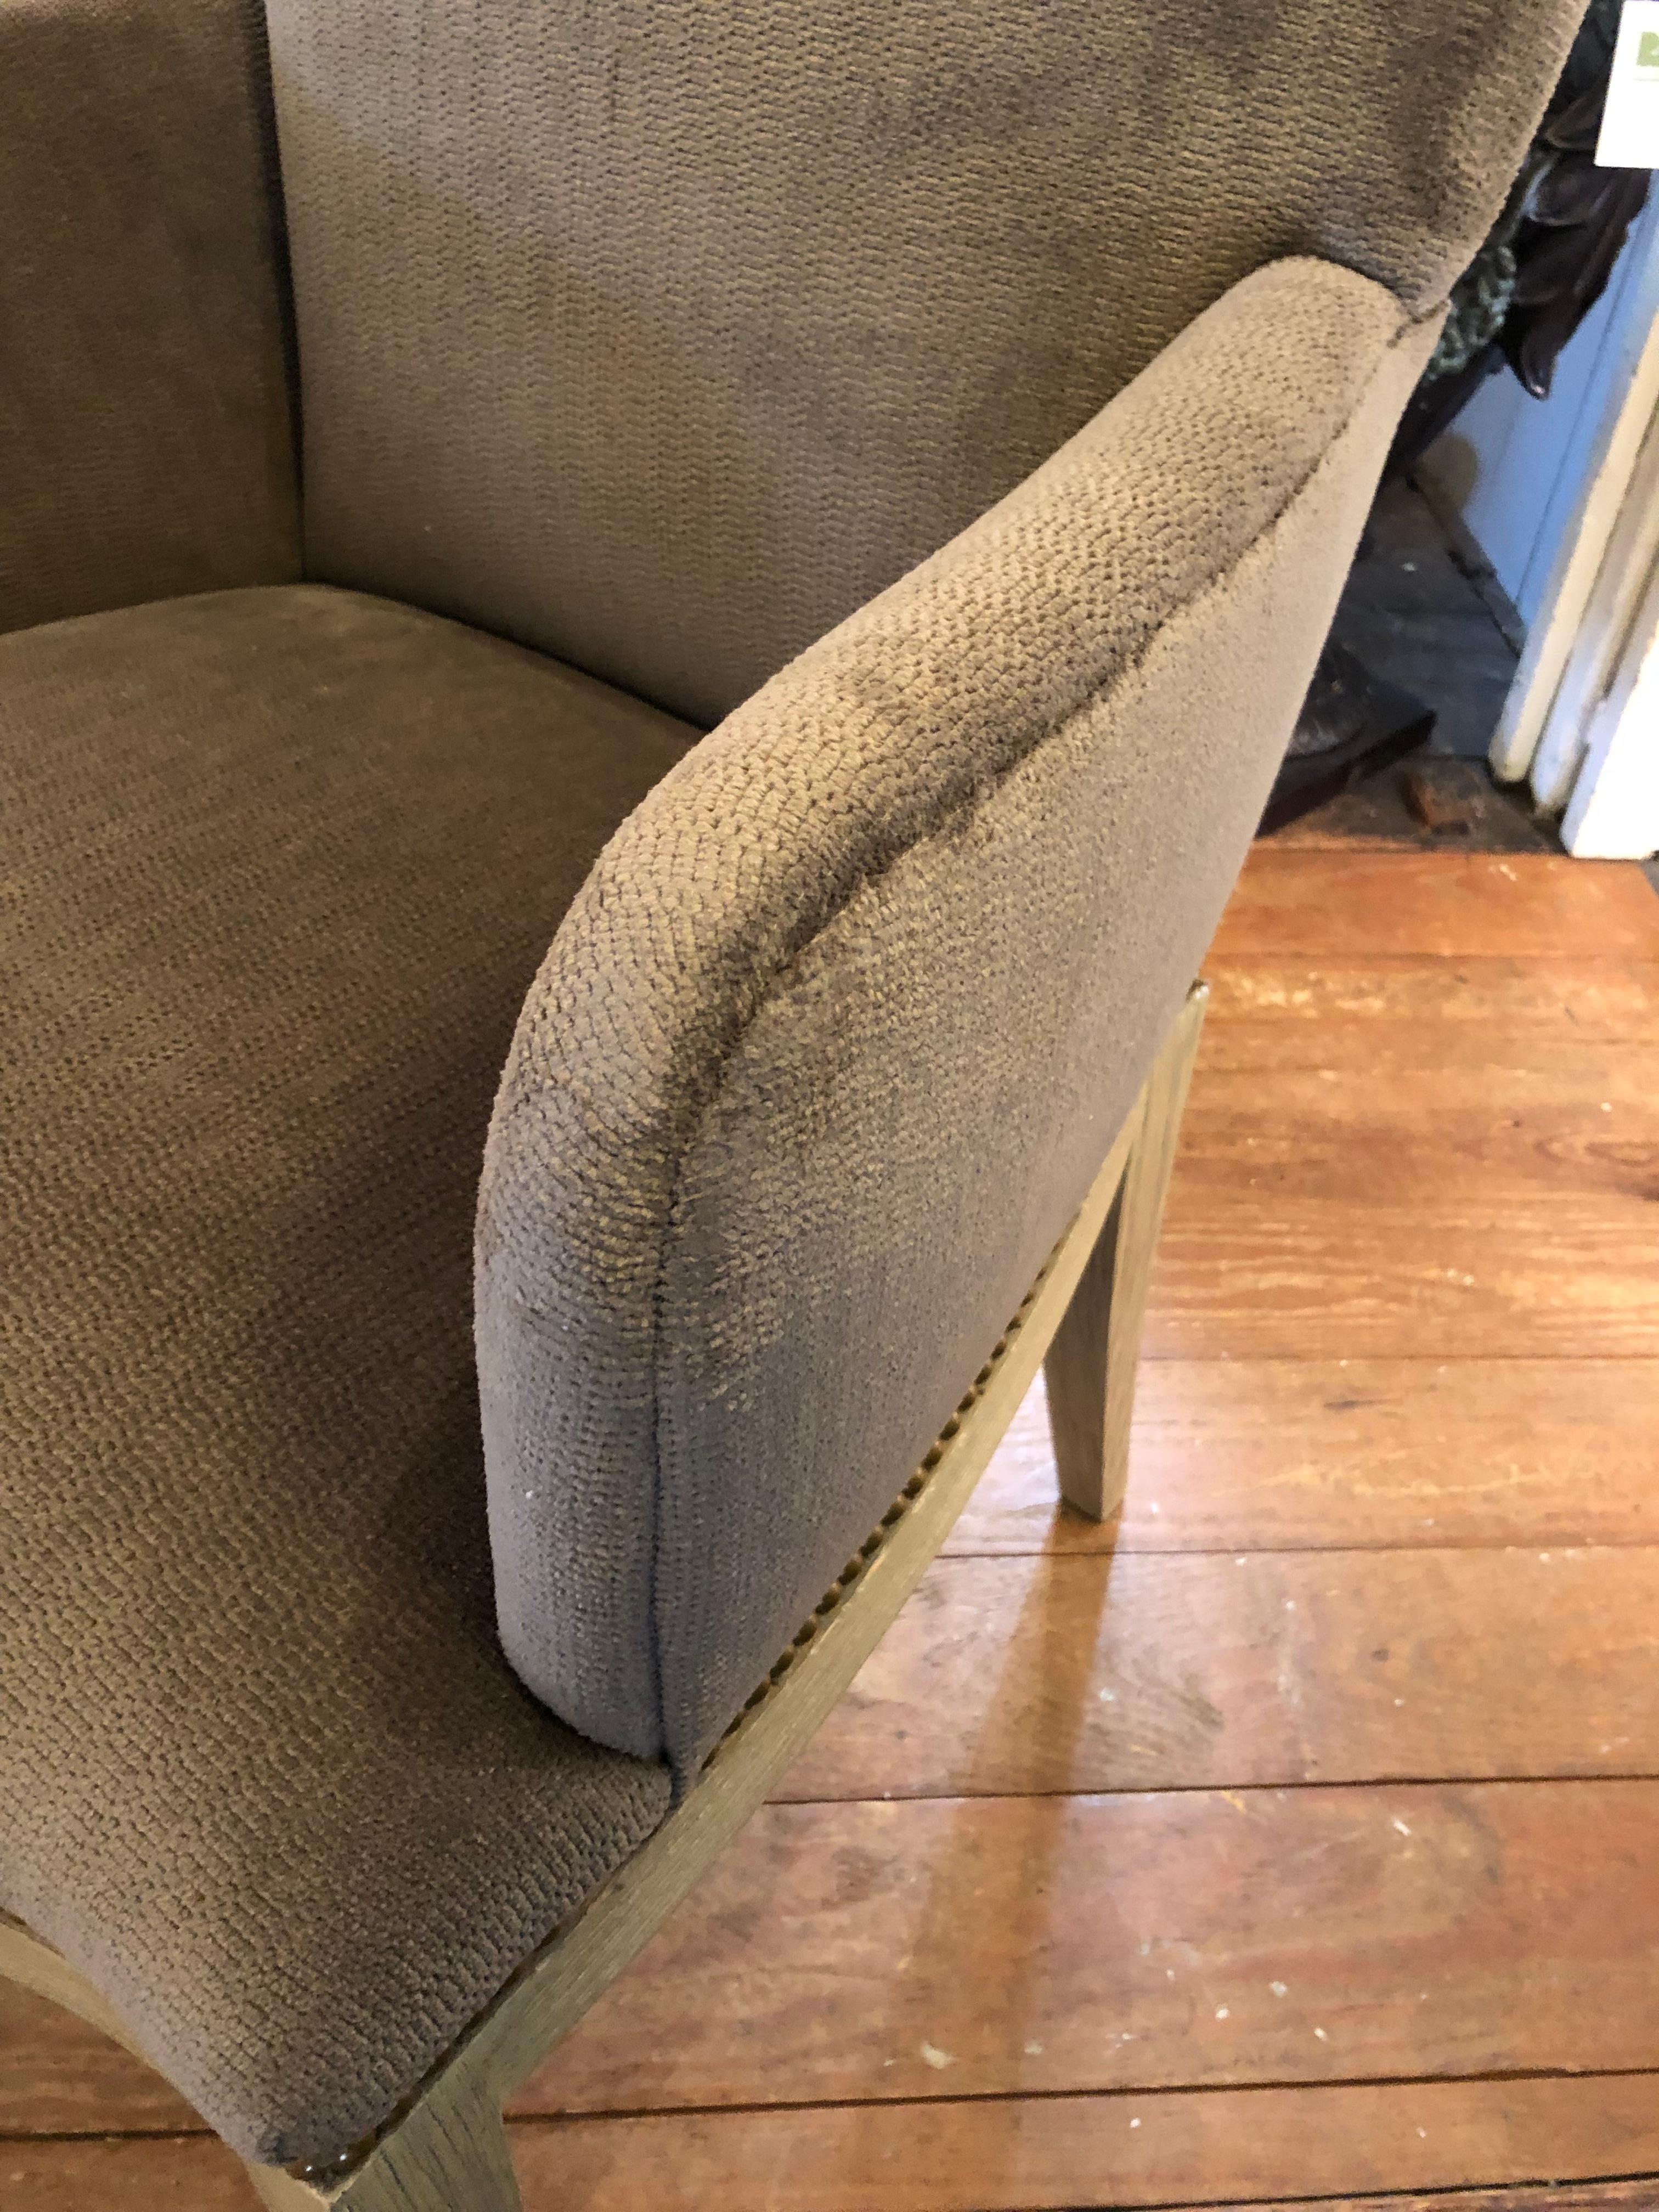 Stilvolles Paar neu gepolsterter grauer Lux-Chenille-Sessel mit matten brasilianischen Nagelköpfen und Untergestellen aus cerused Holz.
Armhöhe 26